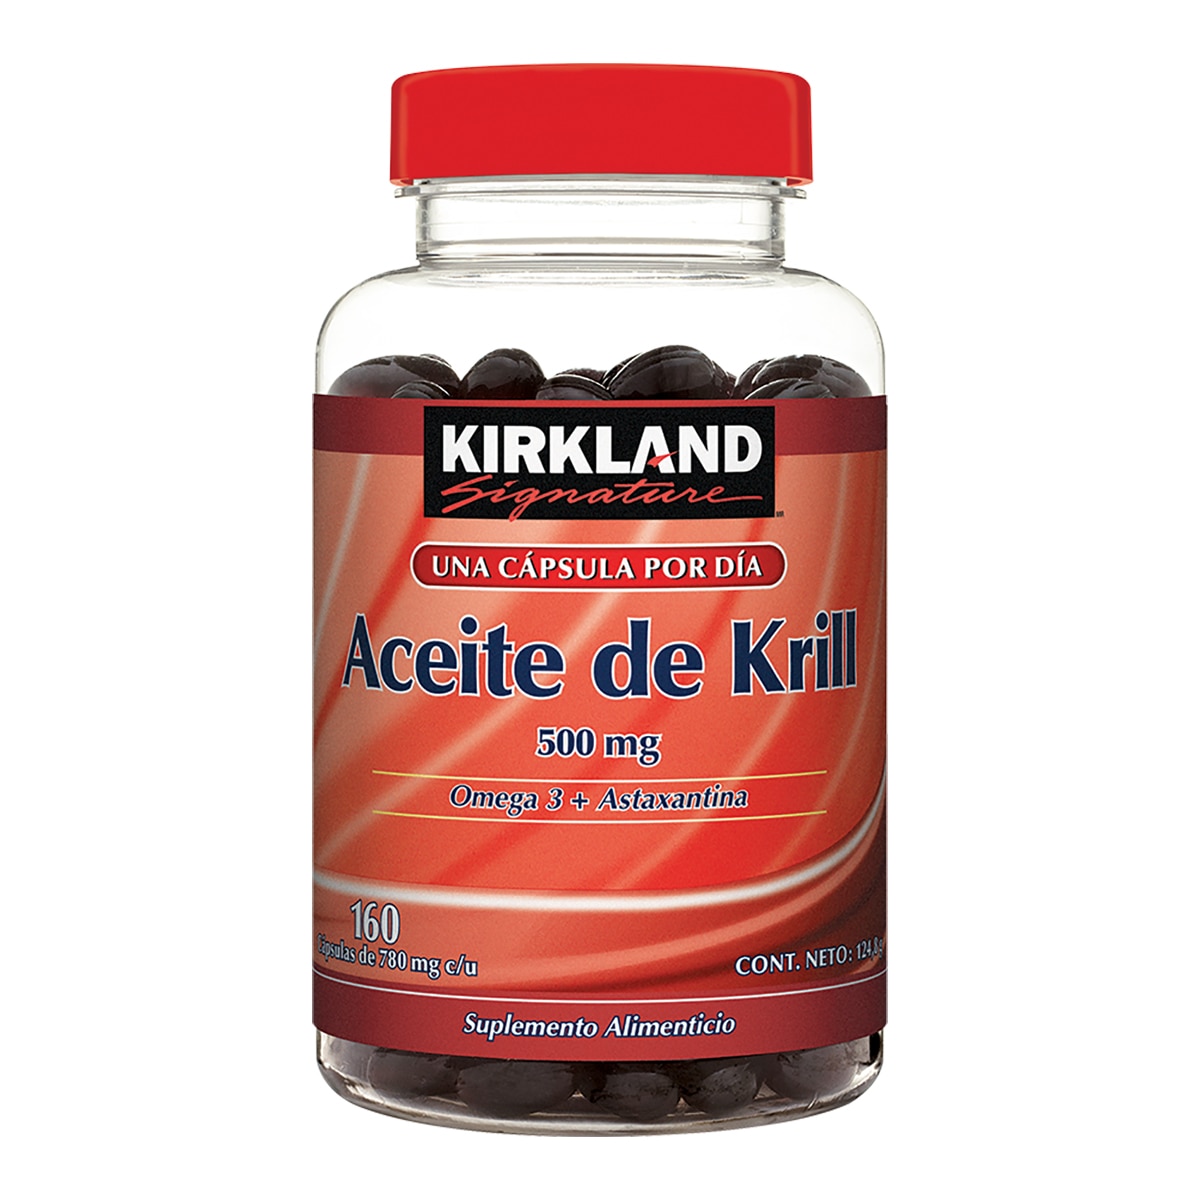 Kirkland Signature Aceite de Krill 